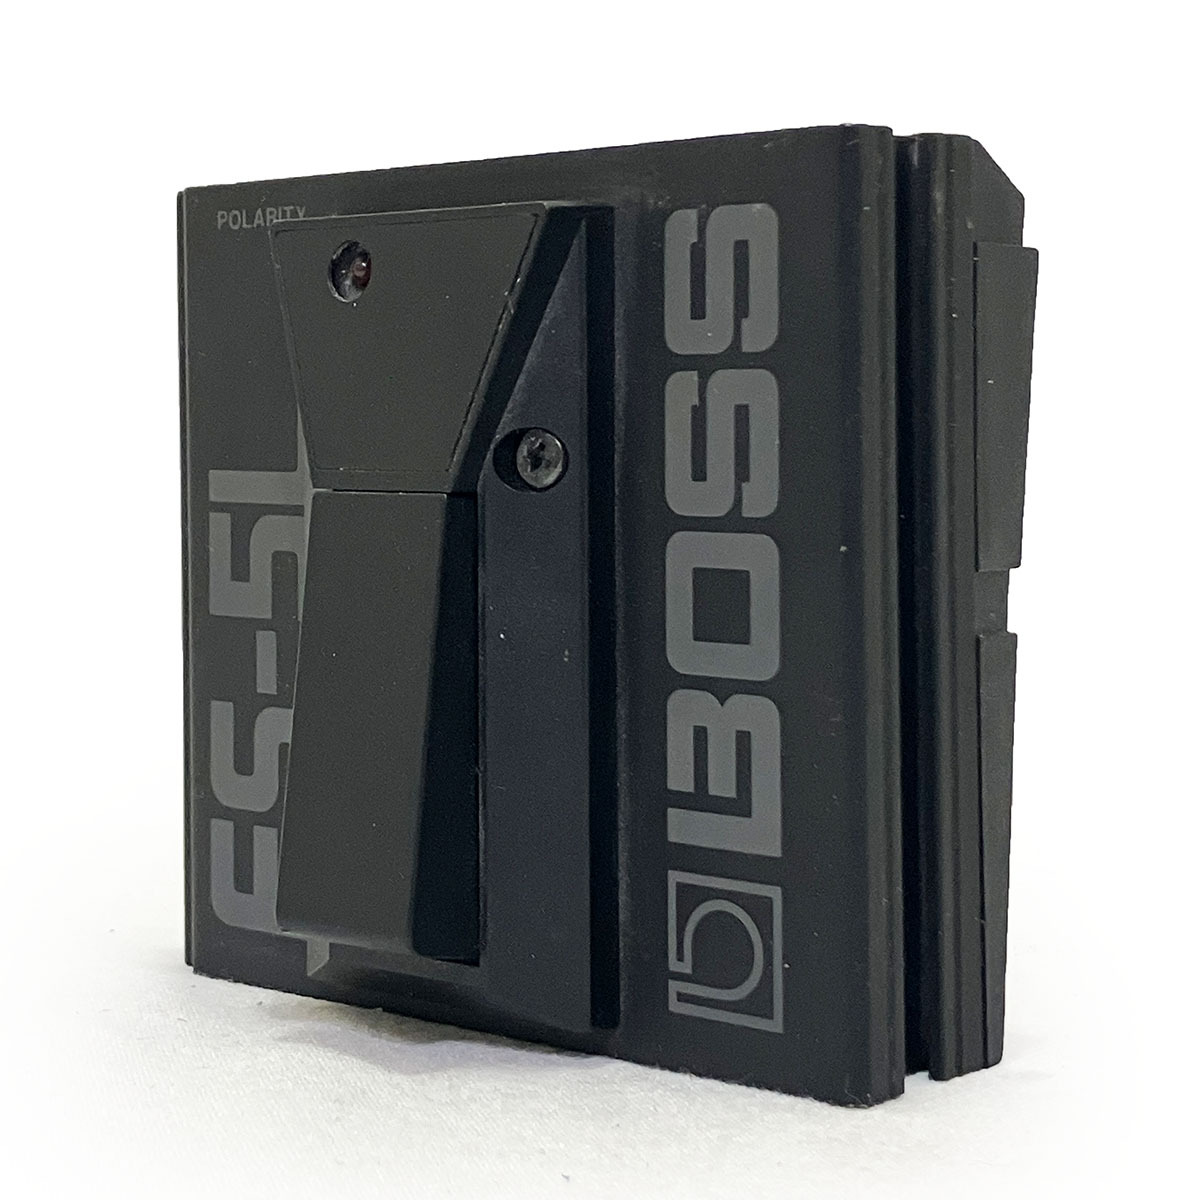 ボス ラッチ フットスイッチ BOSS FS-5L 完動品 正規品 本物 エフェクター ボード アンプ ポラリティ スイッチ 電池 駆動 連結 機材の画像1